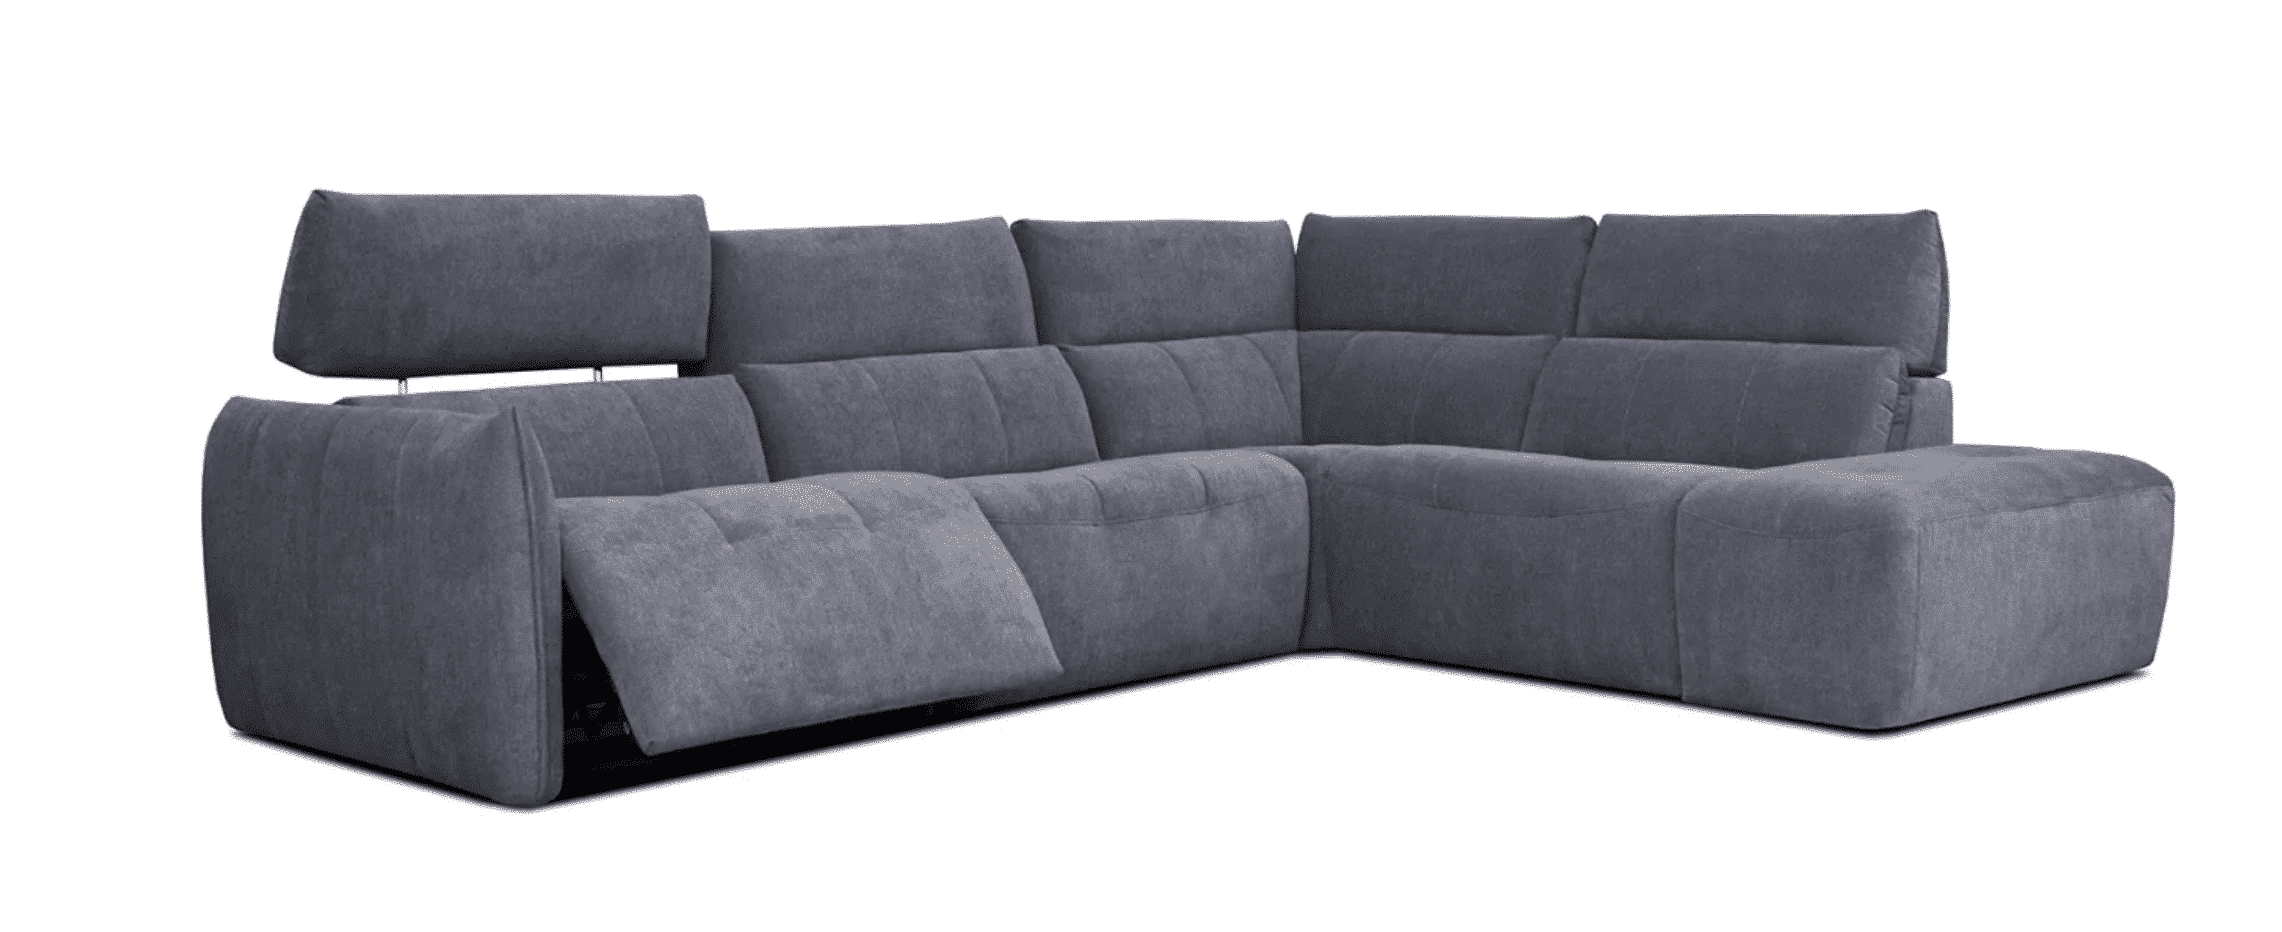 COOPER este o canapea modulară care combină confortul și funcționalitatea. Modelul este disponibil intr-o gama variata de culori, in versiuni fixe si depliabile.